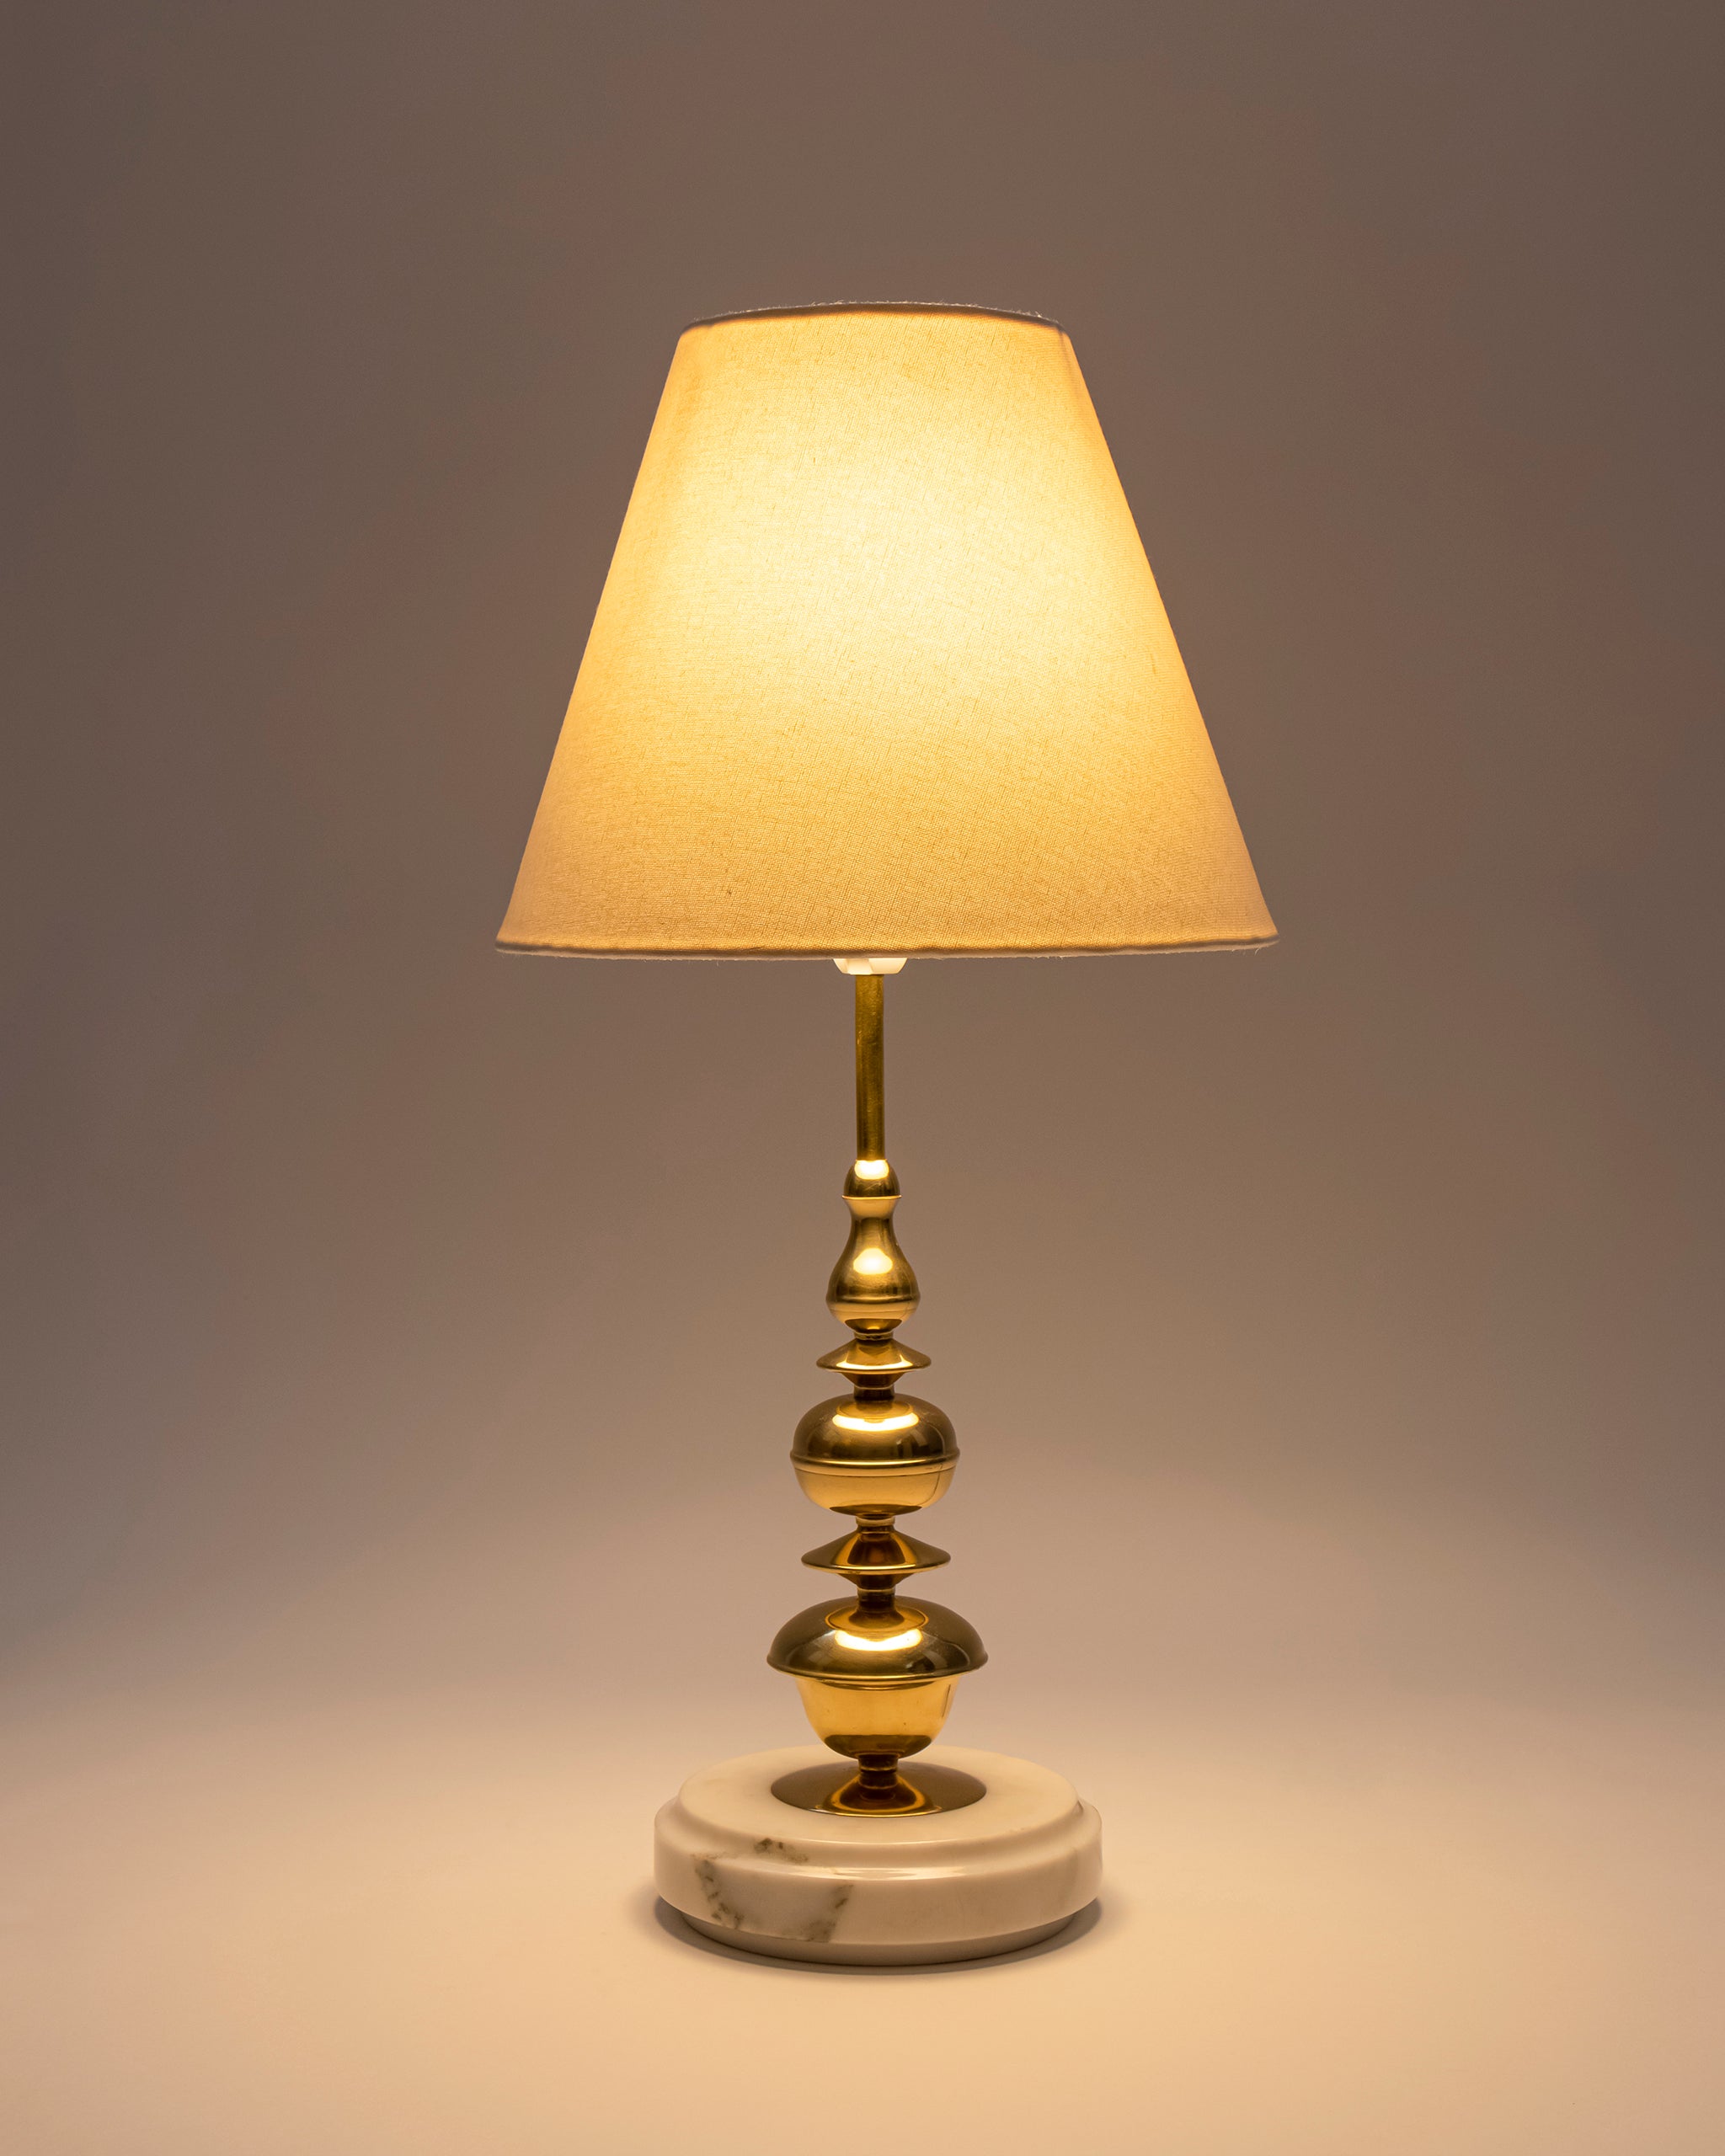 Jaypore Lamp